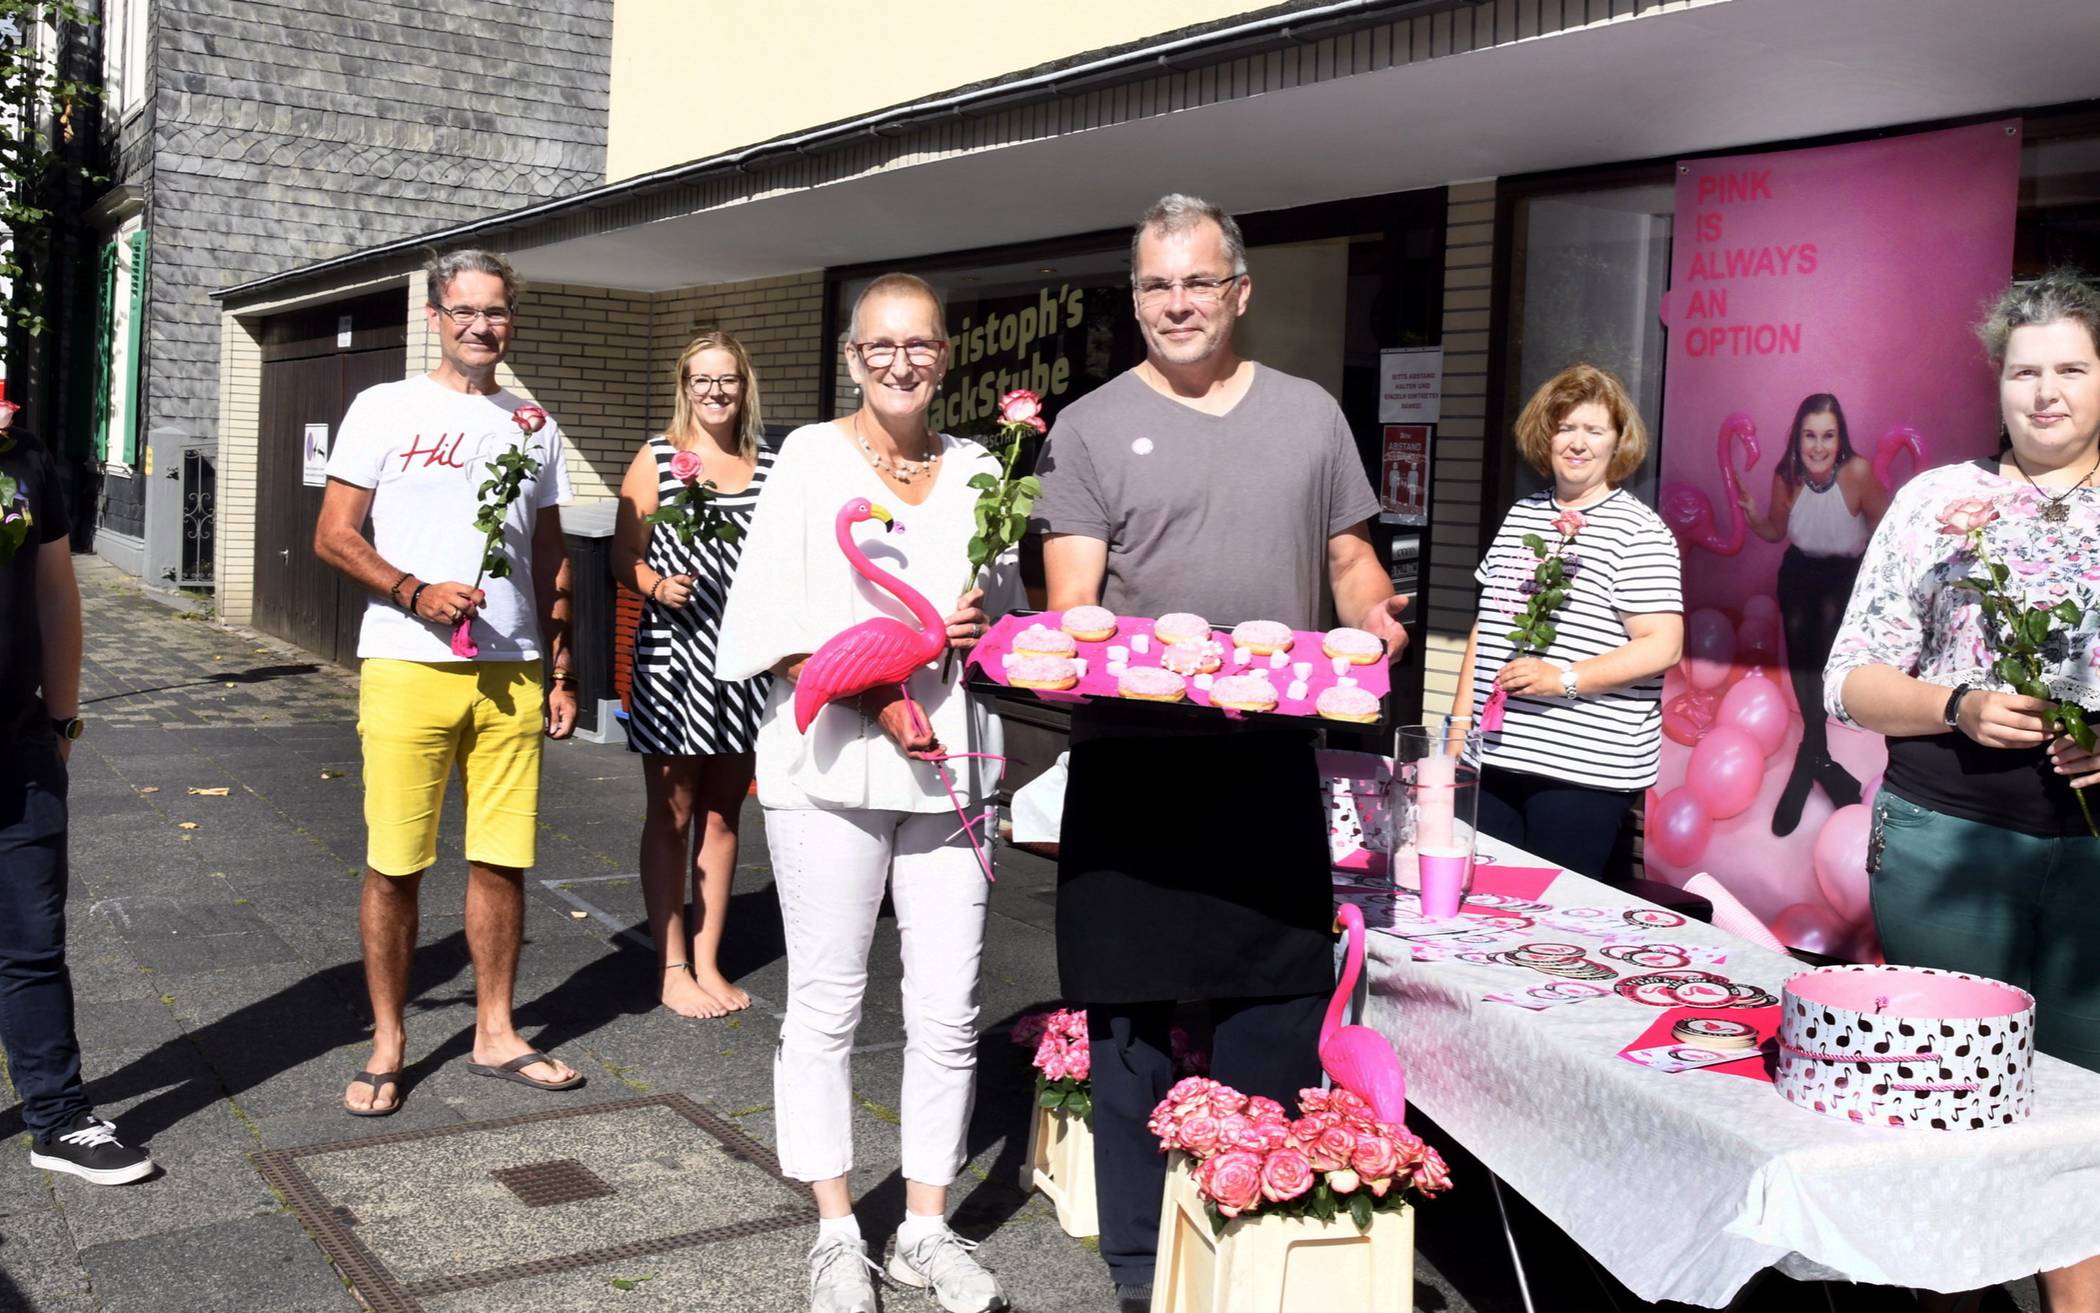  Martina Nierhoff (Mitte) mit Bäckermeister Christoph Fries, den „Go Pink“-Botschaftern Jennifer Caro und Maik Stupp sowie Nachbarn aus Beyenburg.  